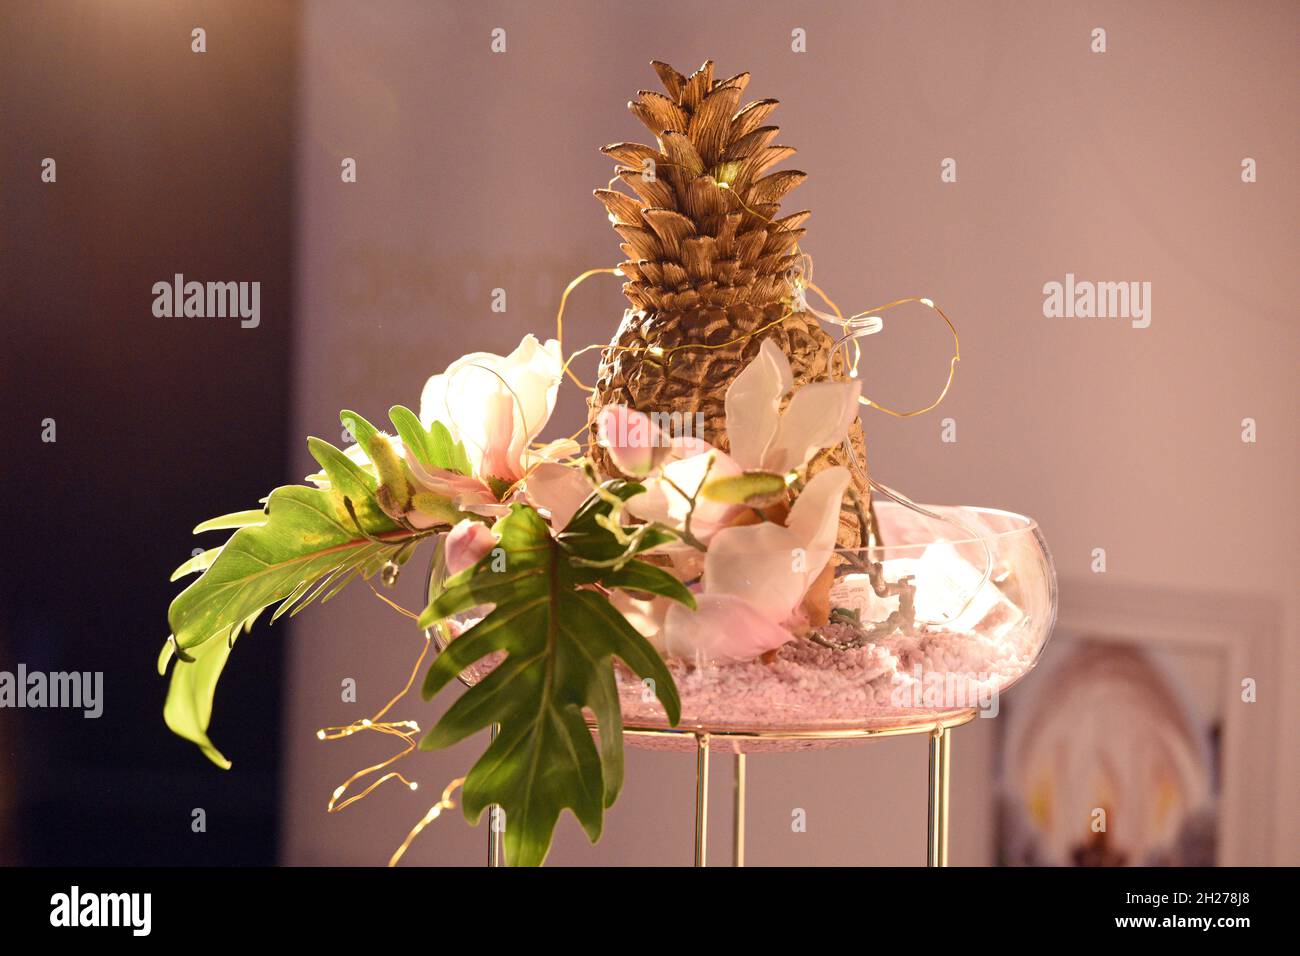 Dekoration und Accessoires für eine Hochzeit - Decoration and accessories for a wedding Stock Photo